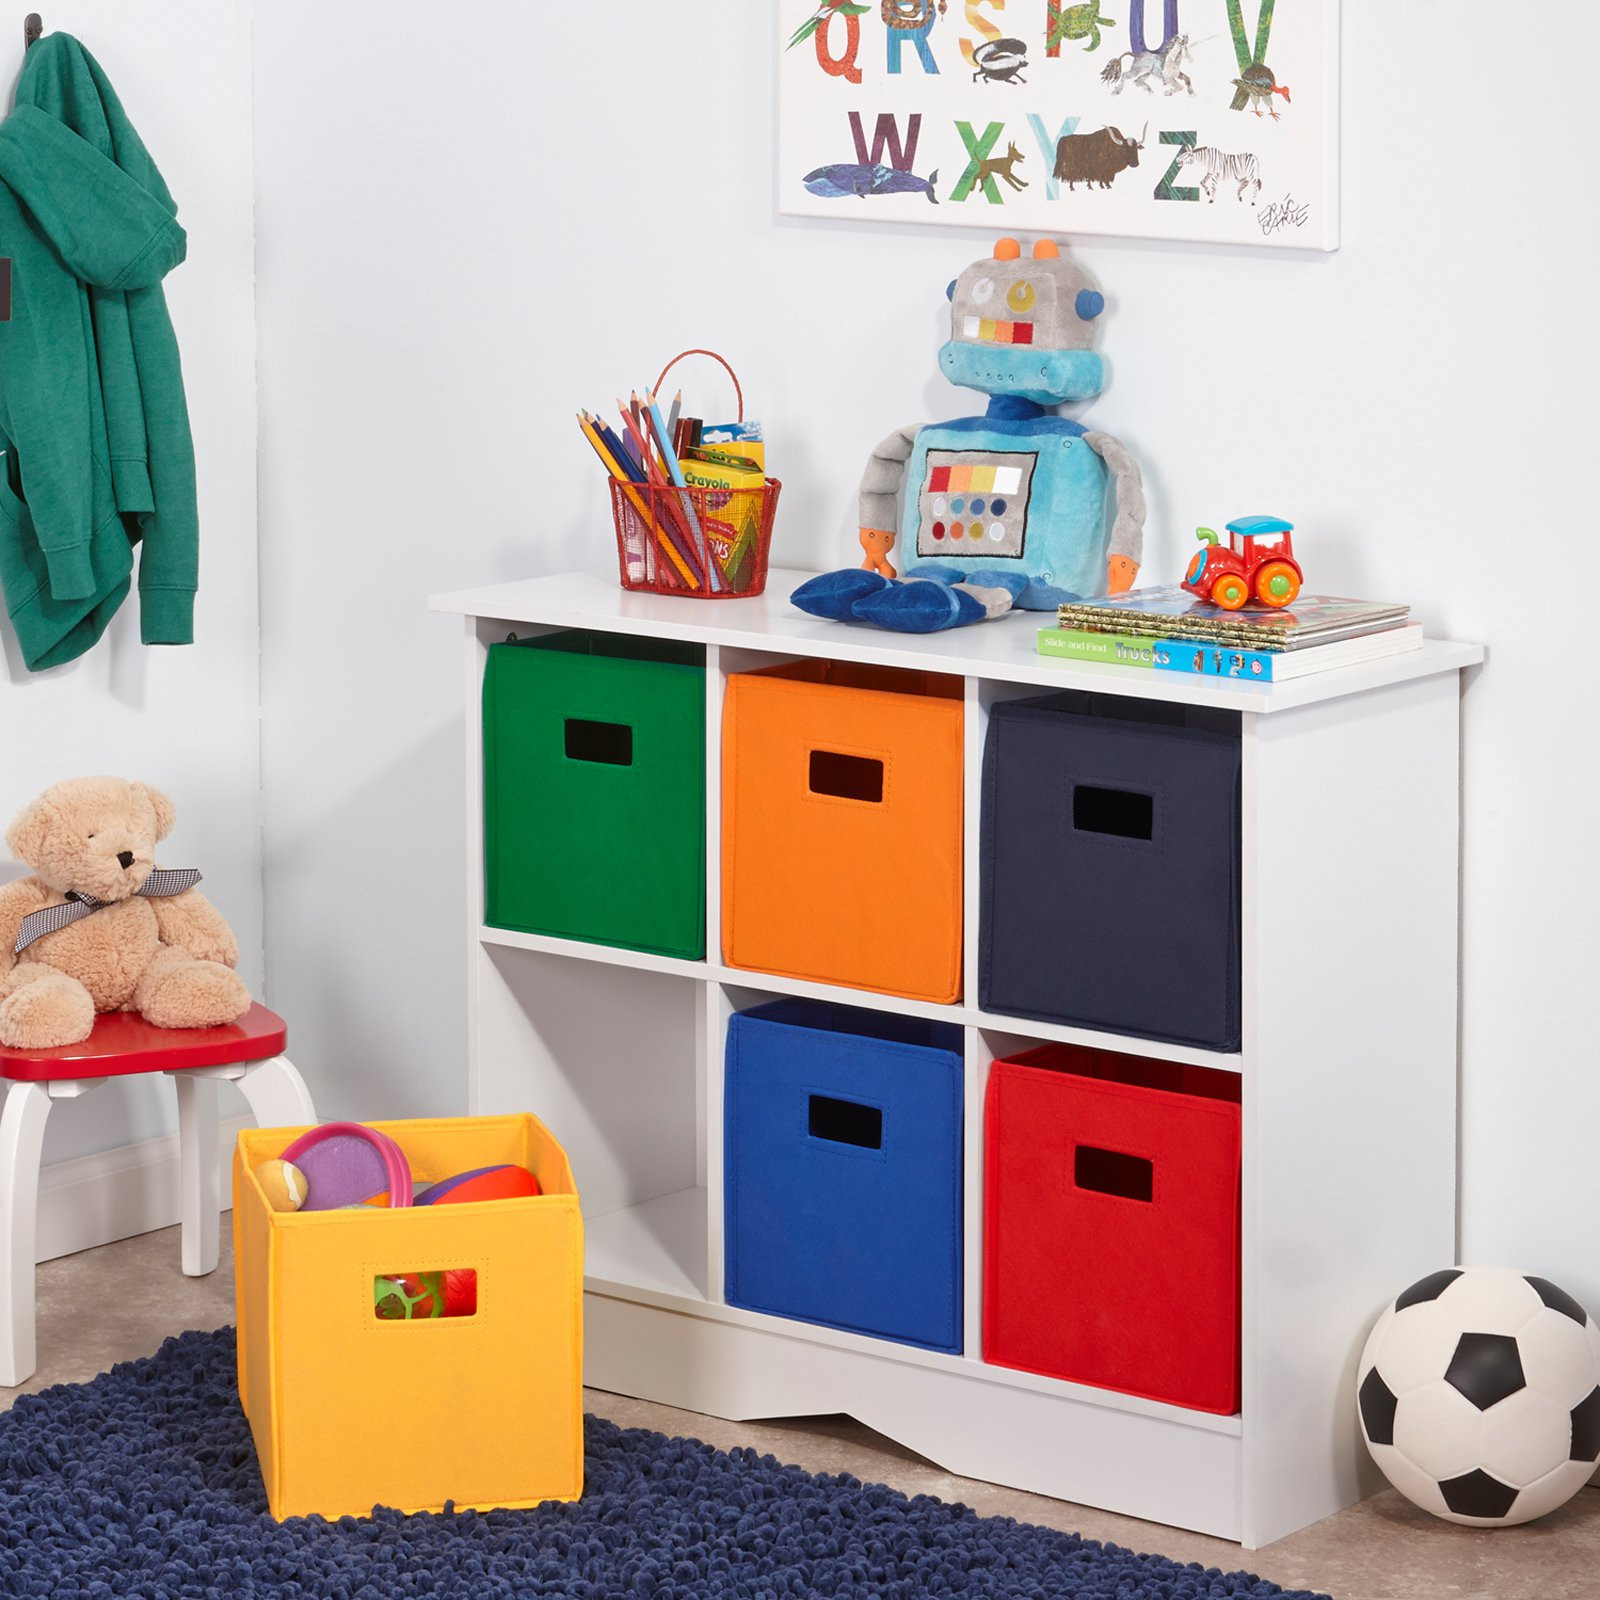 Child Storage Bins
 RiverRidge Kids White Cabinet with 6 Bins Toy Storage at